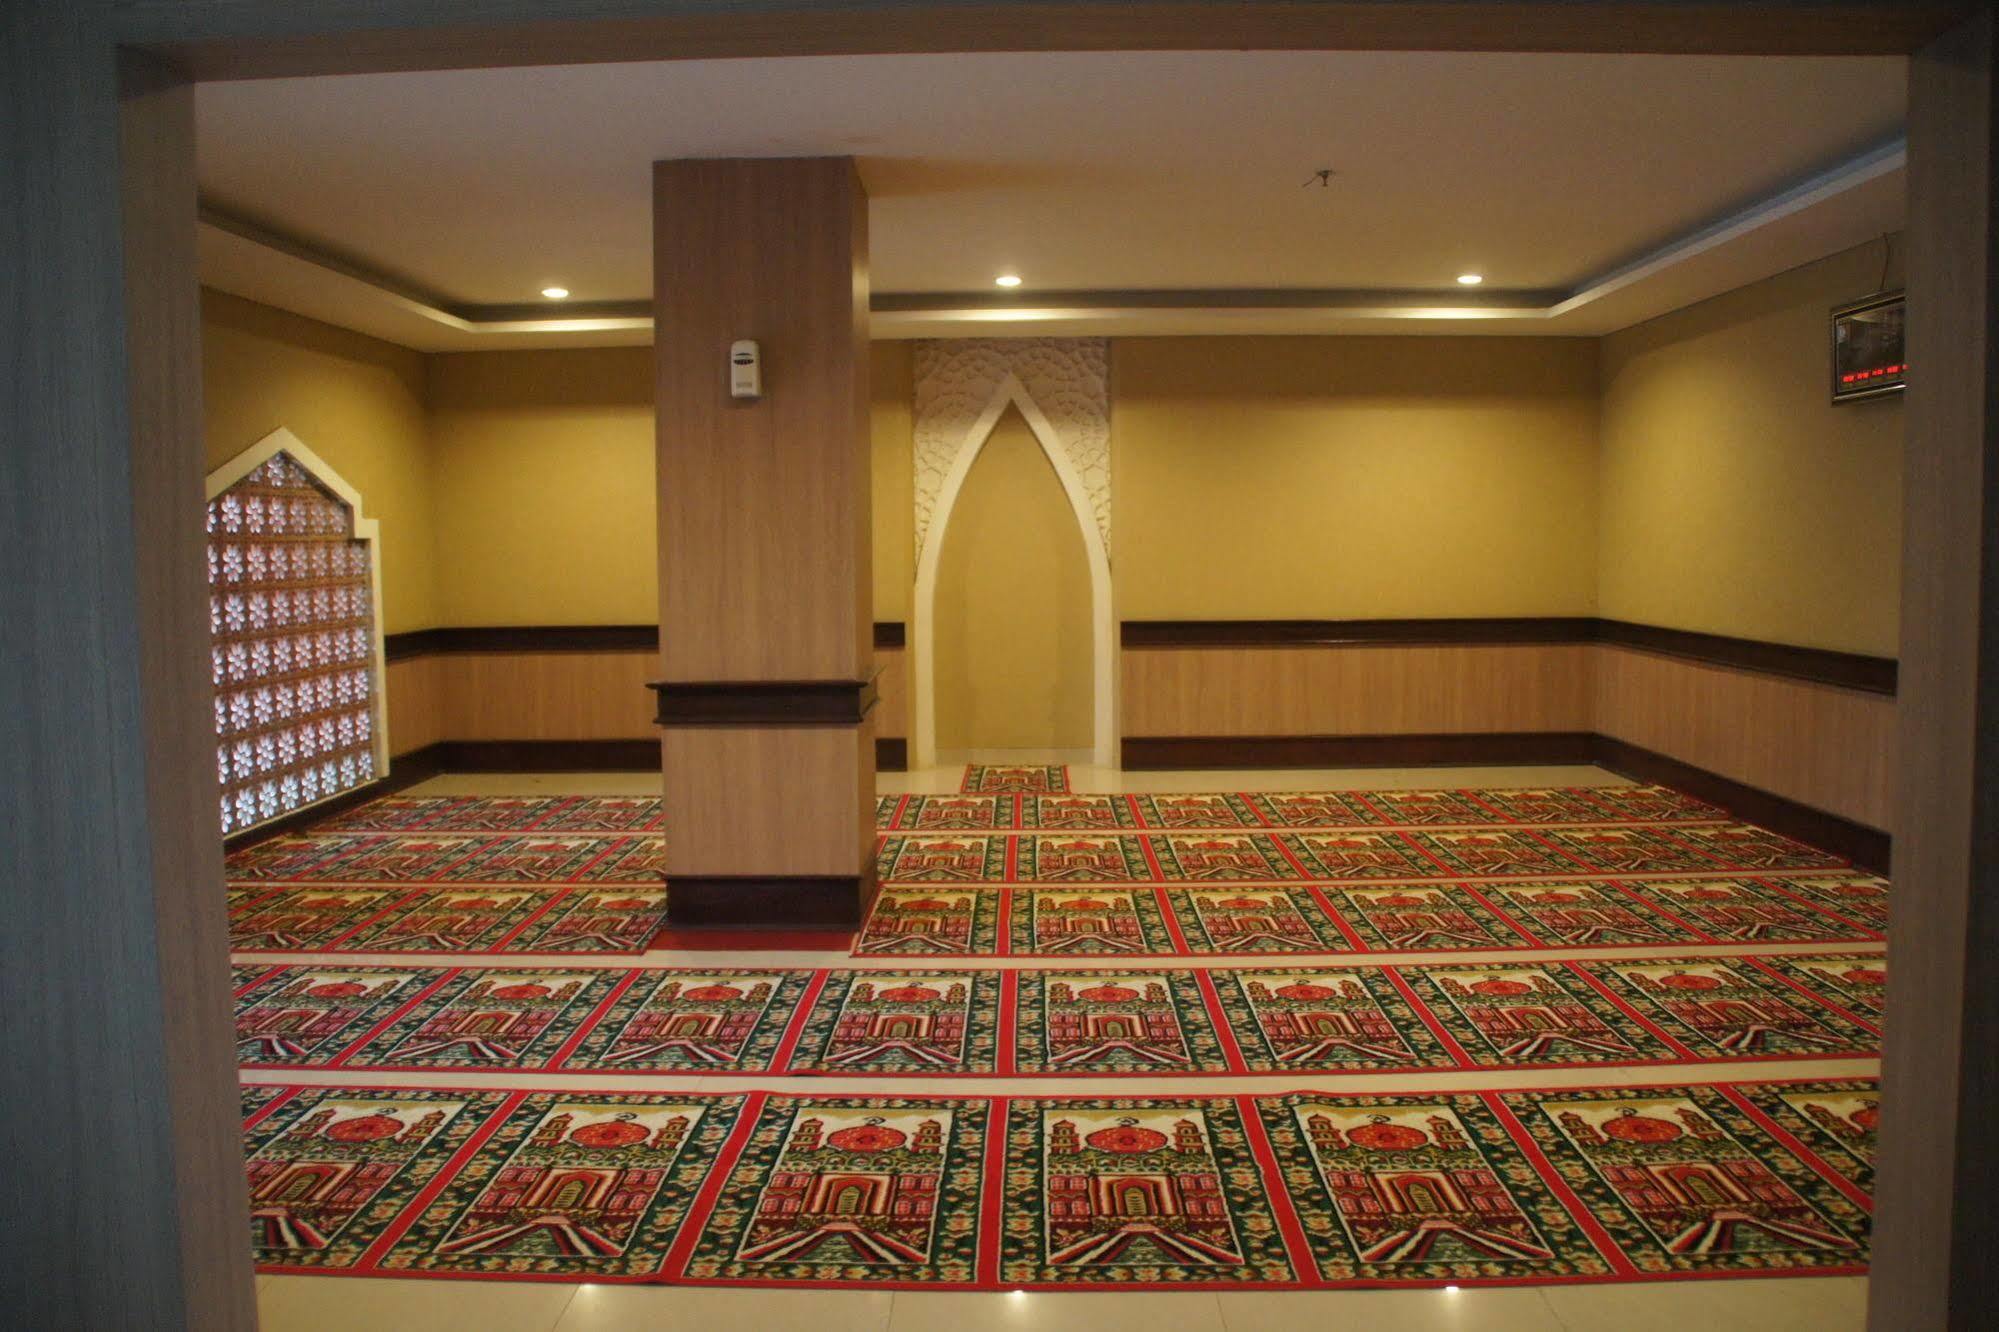 Syariah Hotel Solo Bagian luar foto